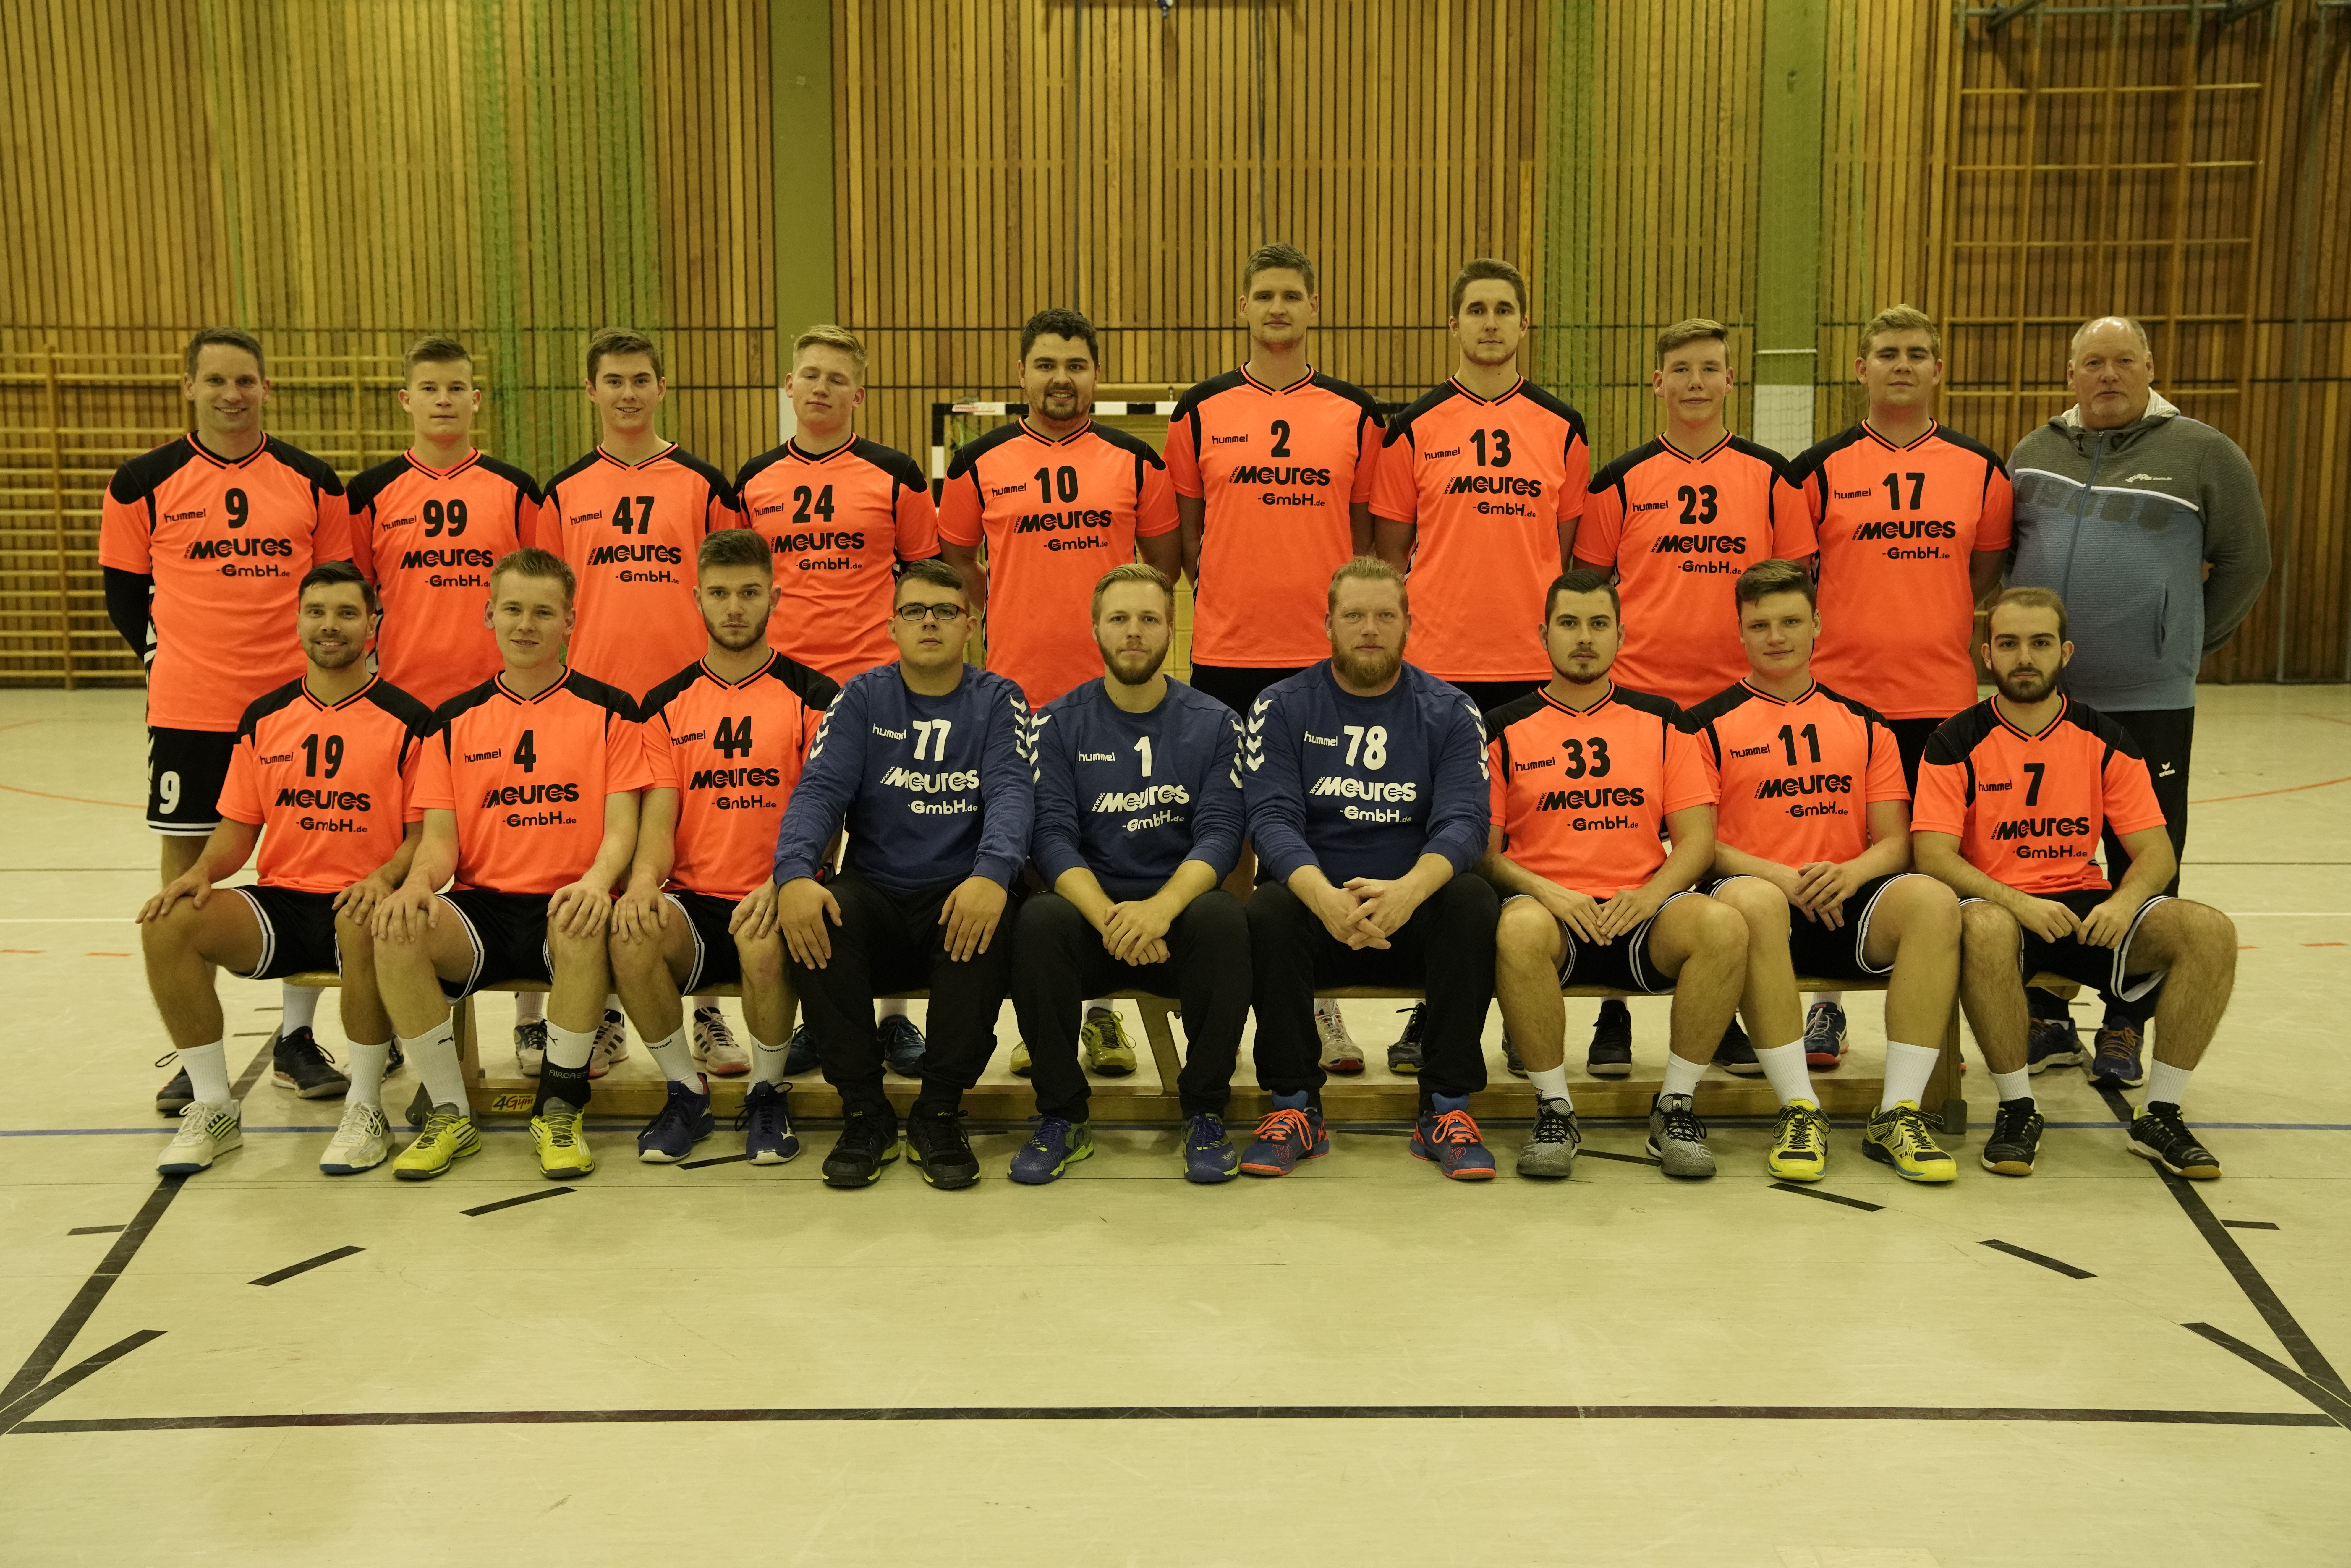 https://tus-nordenstadt-handball.de/wp-content/uploads/2021/09/DSC8988.jpg